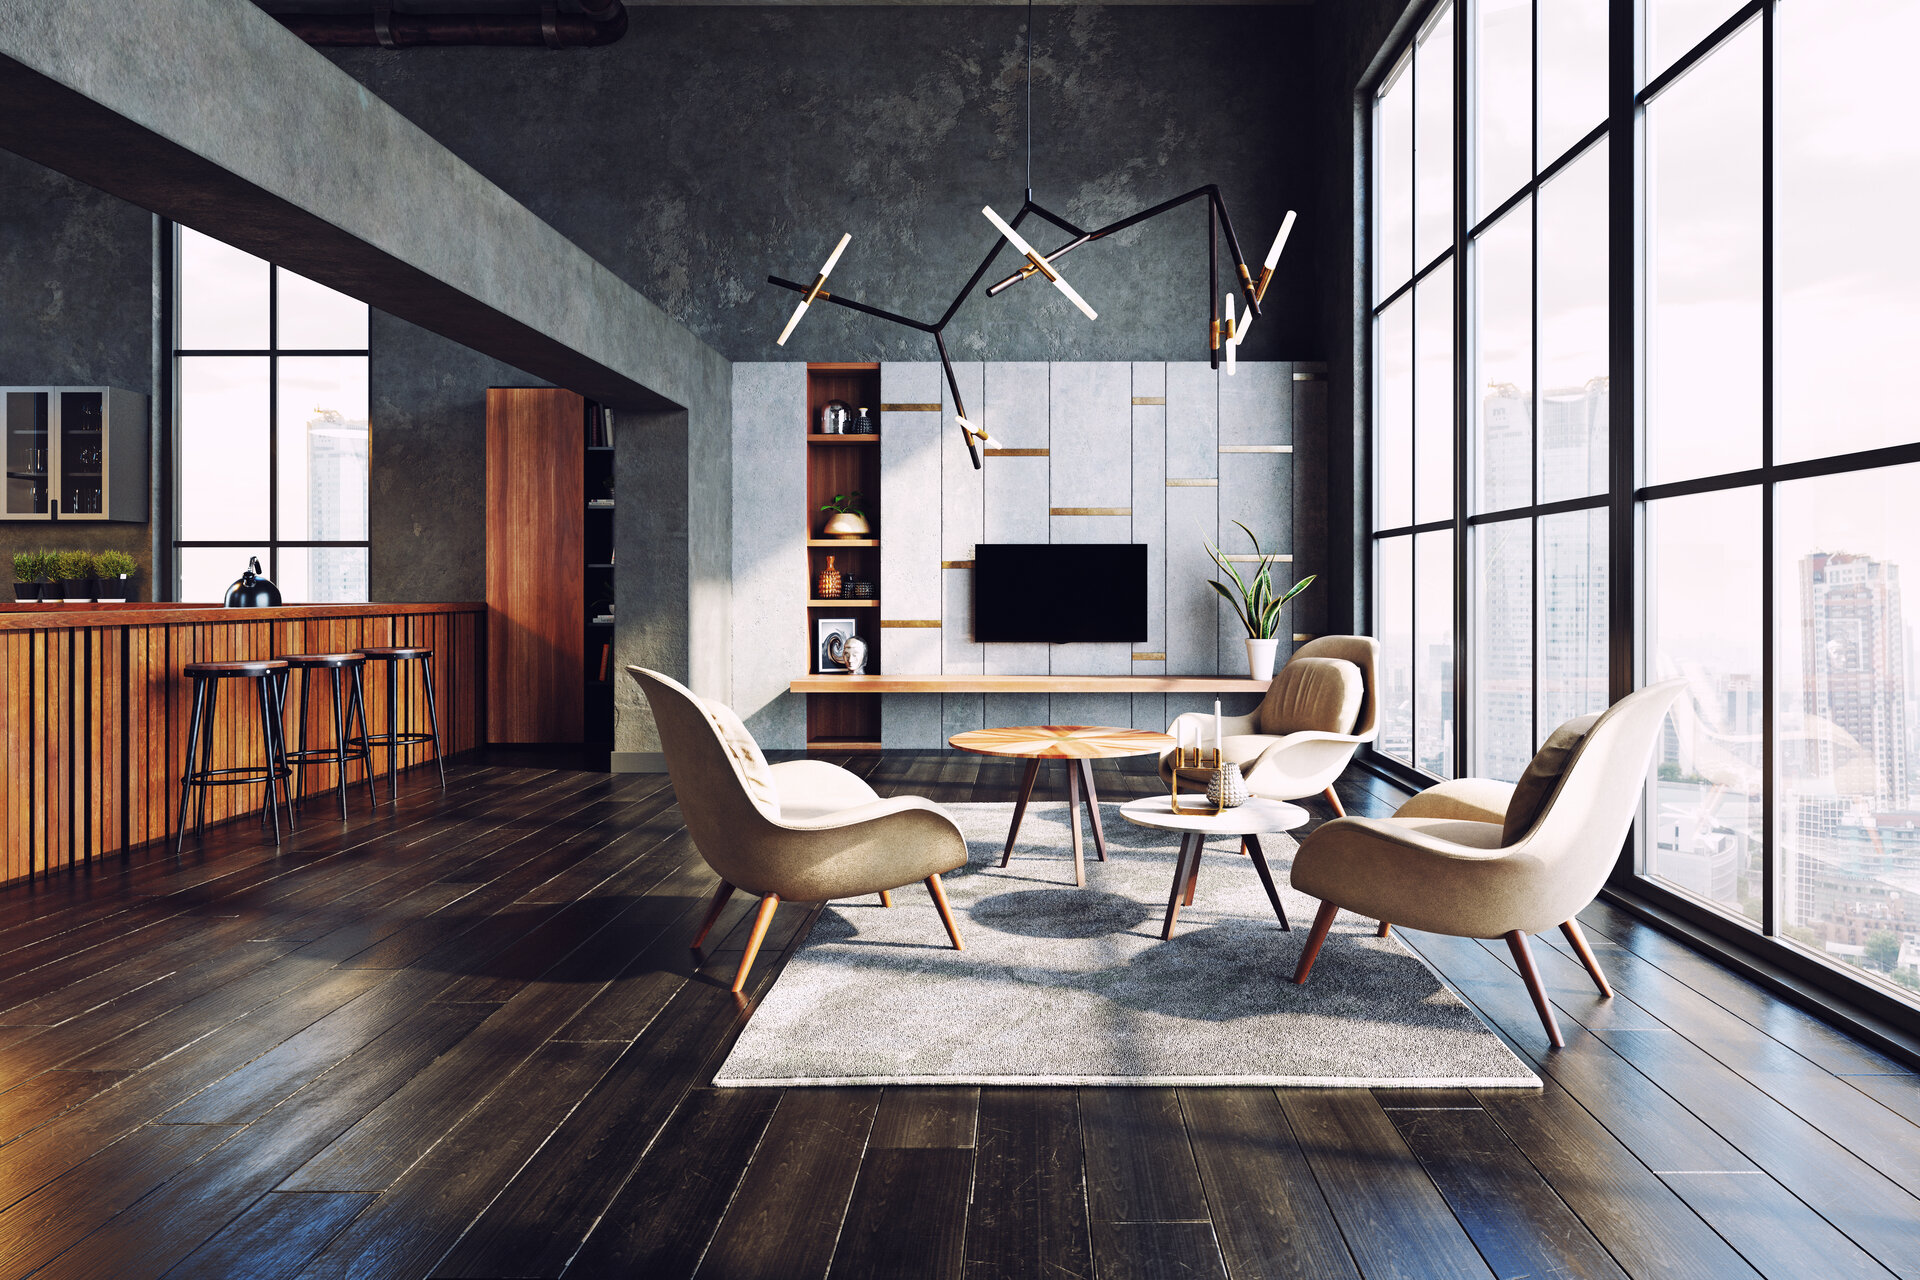 Ungewöhnliches Design für zuhause – 3 spannende Möbelstücke!